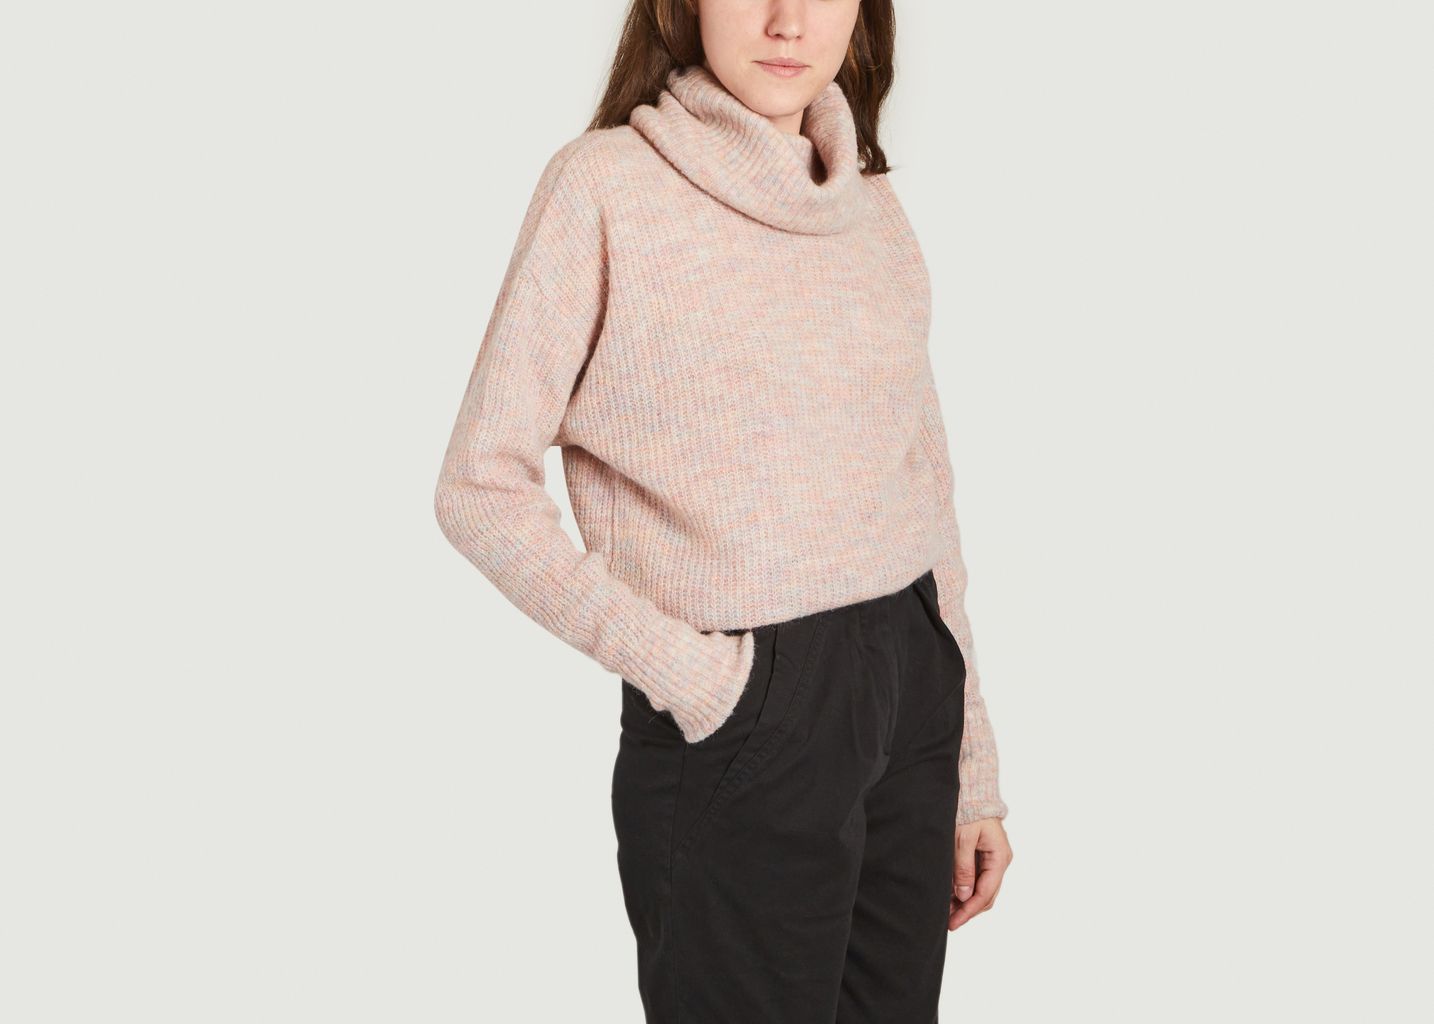 Daisy sweater in wool blend - IRO